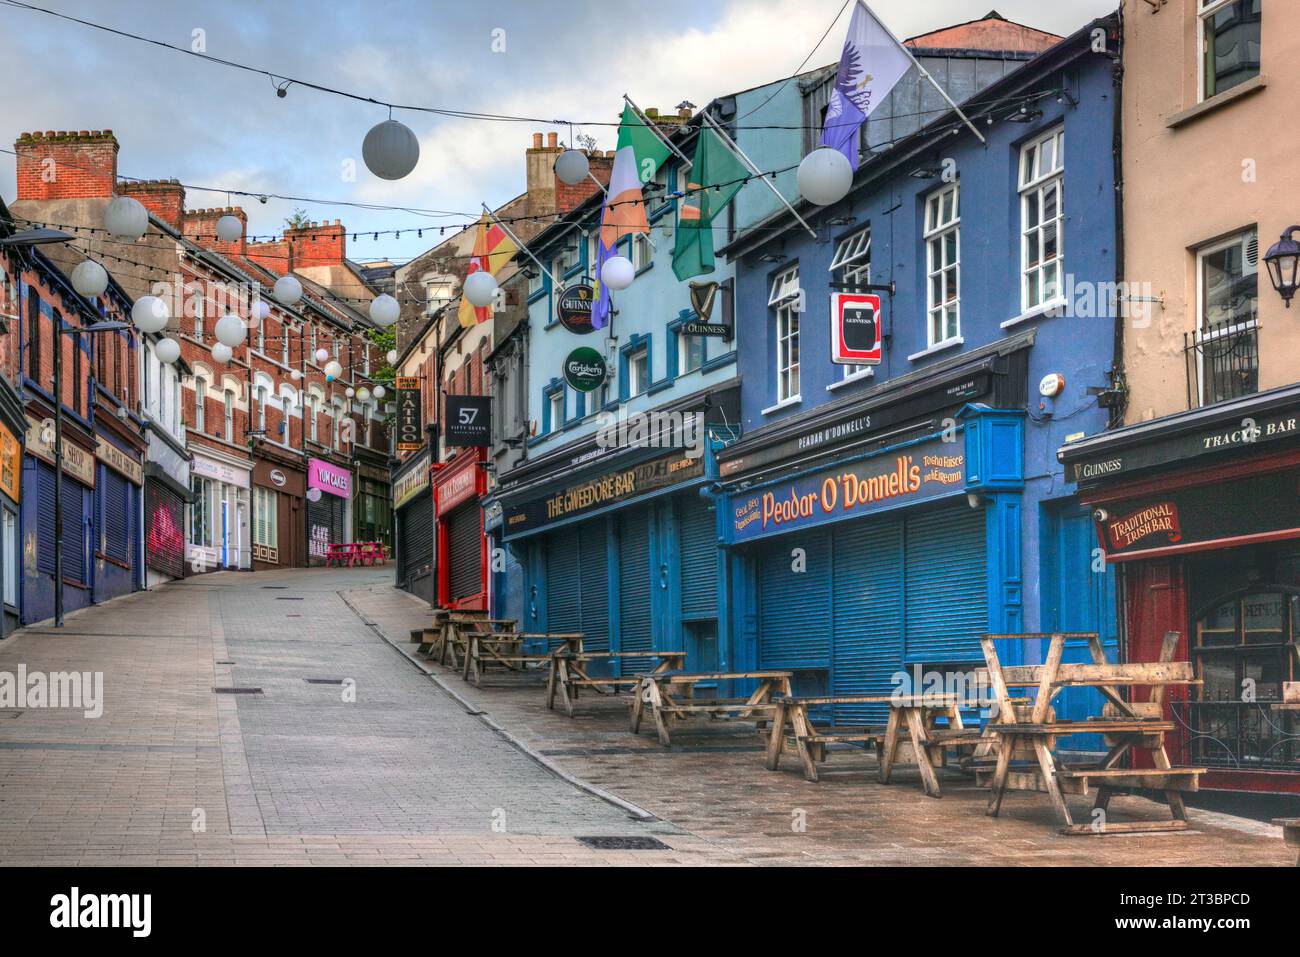 Irische Pubs in der Altstadt von Derry, Nordirland. Stockfoto